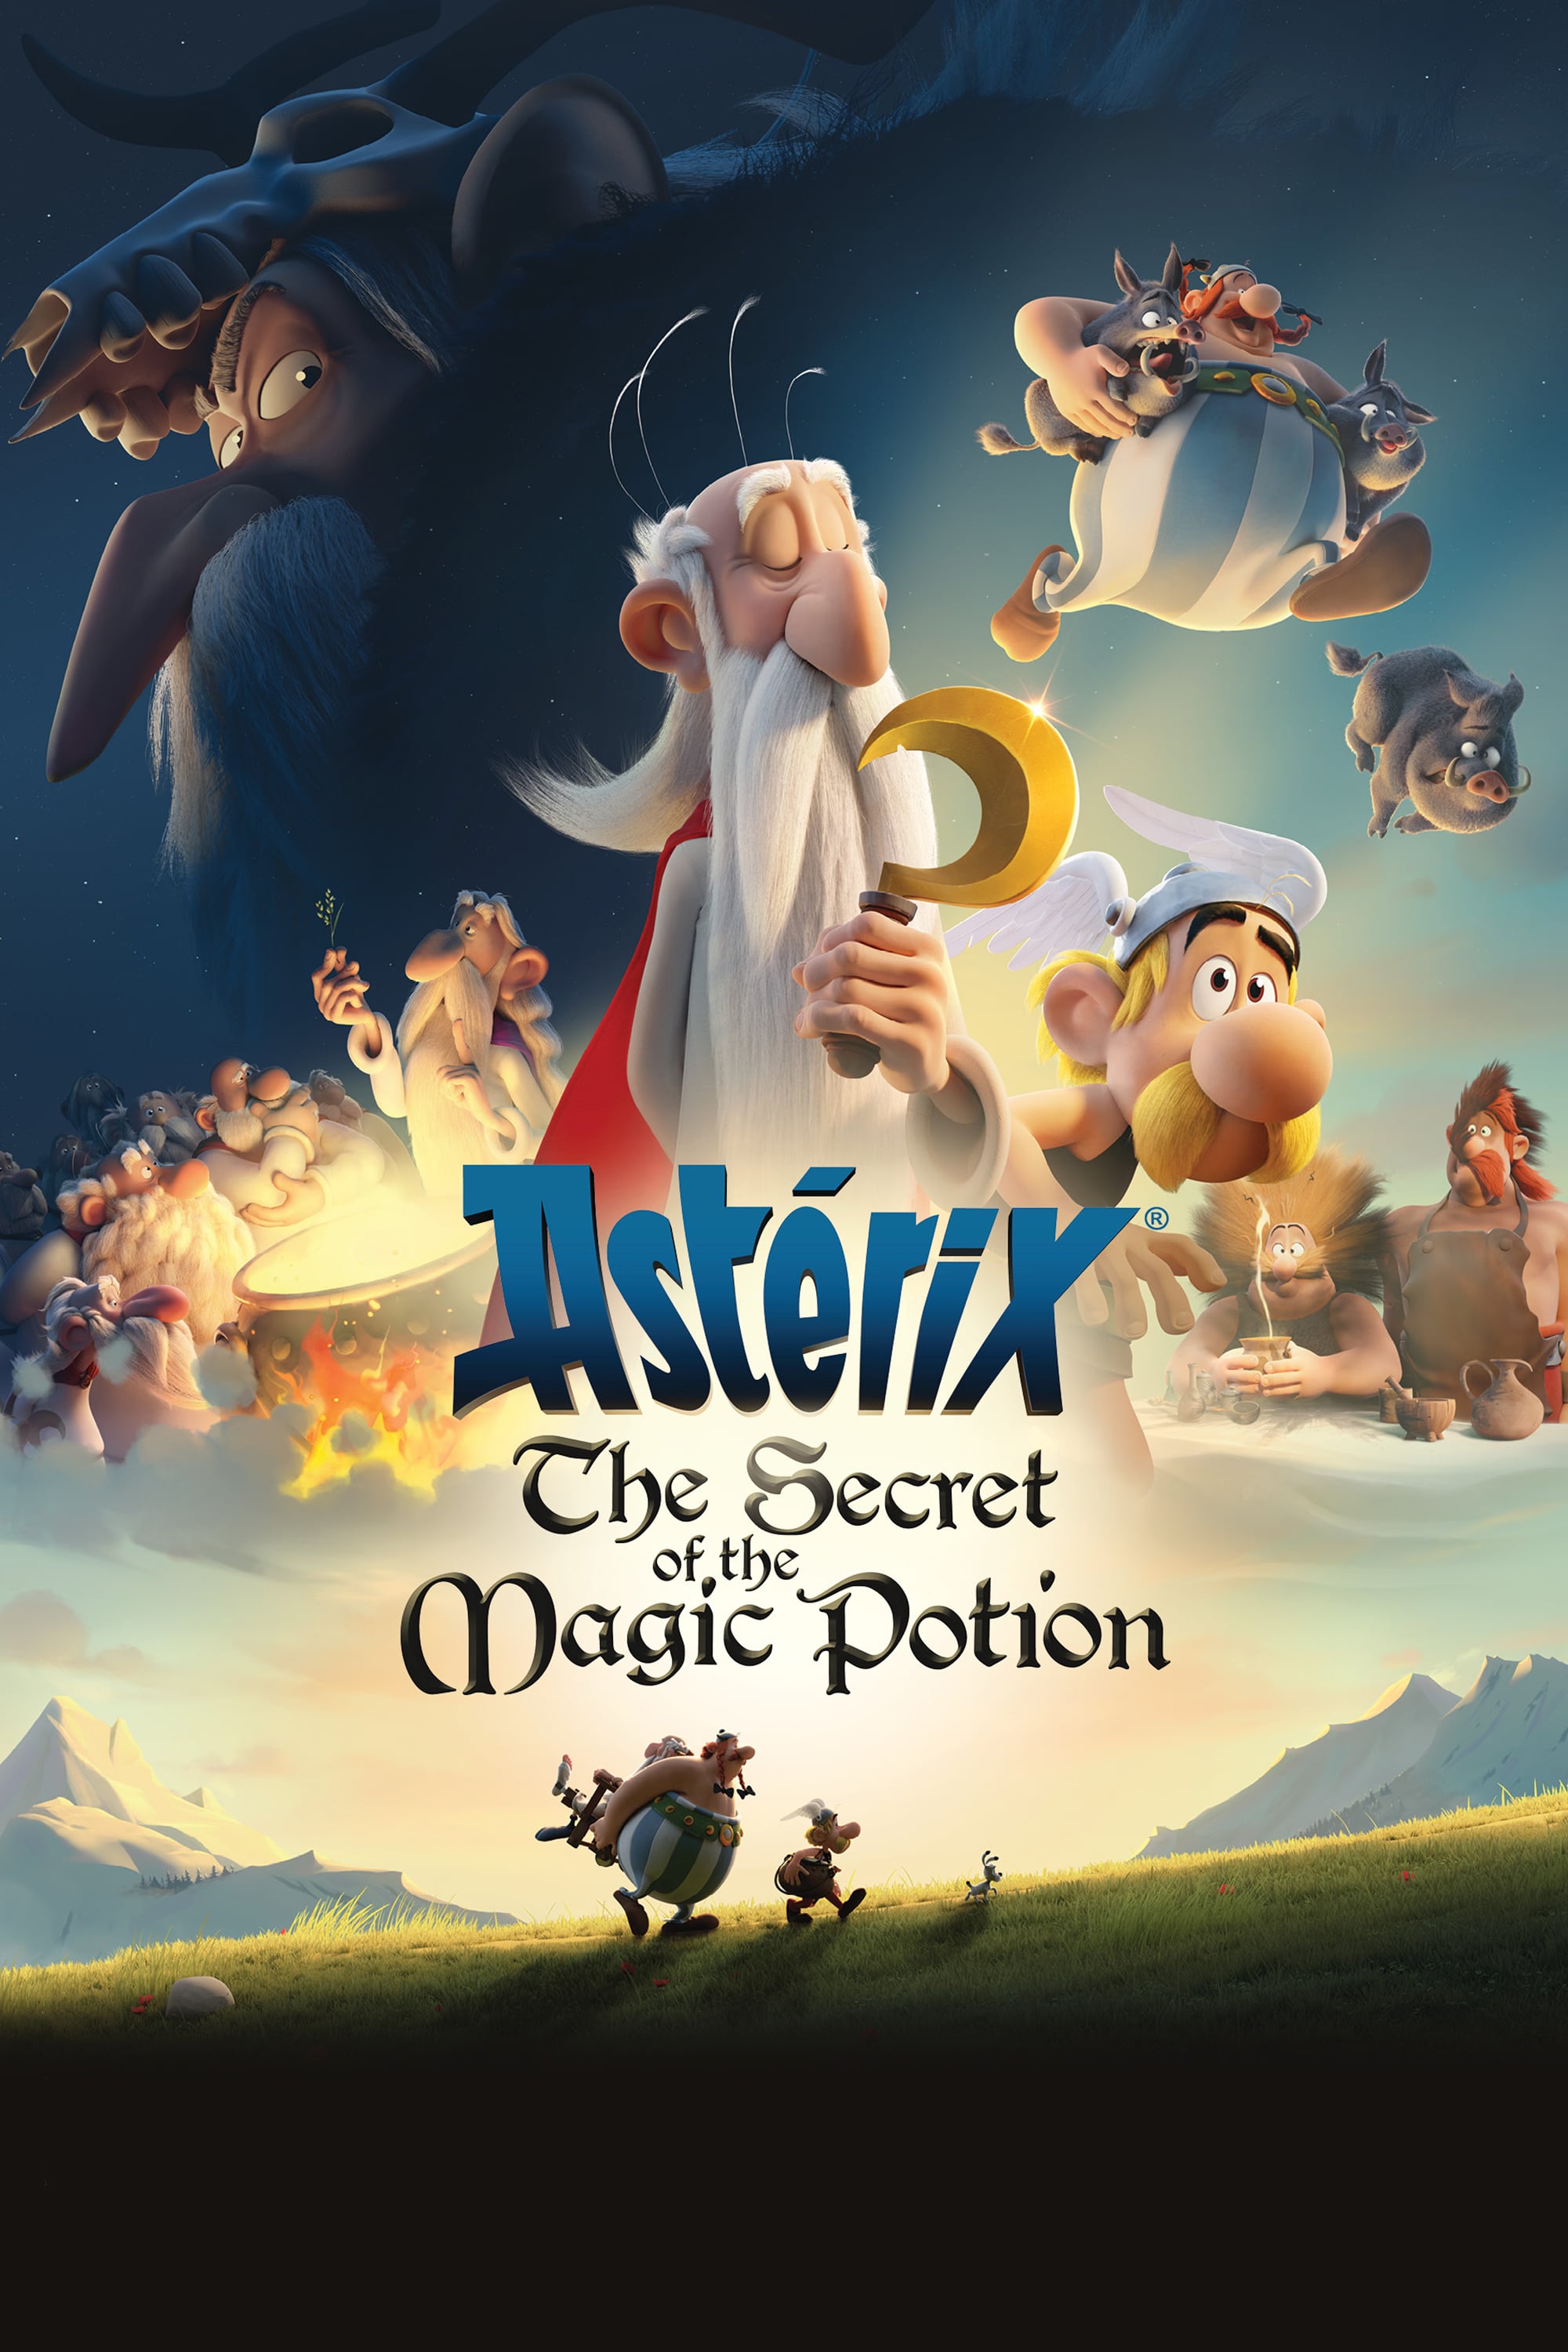 Caratula de Astérix - Le Secret de la Potion Magique (Astérix: El secreto de la poción mágica) 